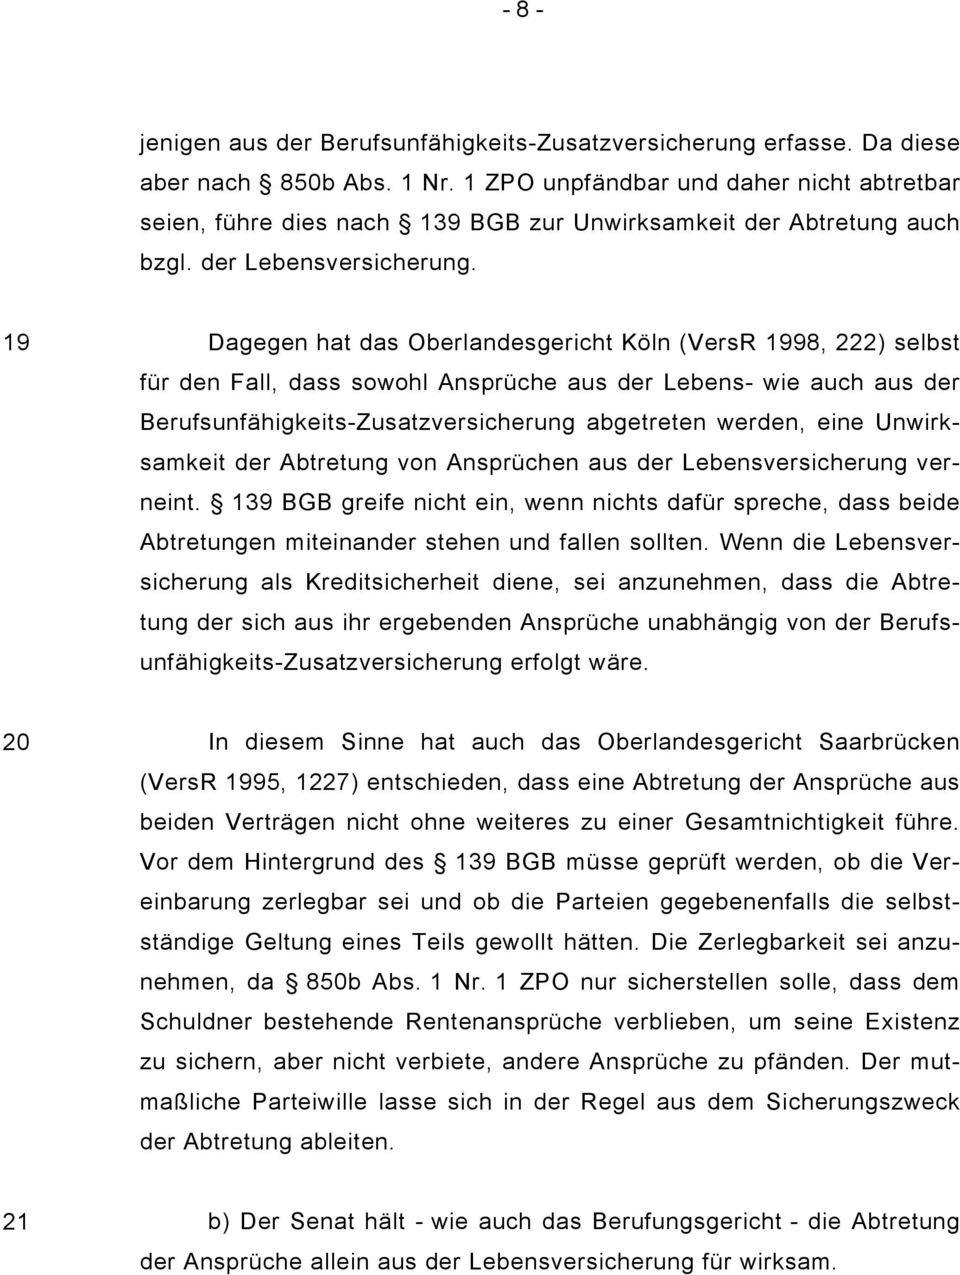 19 Dagegen hat das Oberlandesgericht Köln (VersR 1998, 222) selbst für den Fall, dass sowohl Ansprüche aus der Lebens- wie auch aus der Berufsunfähigkeits-Zusatzversicherung abgetreten werden, eine